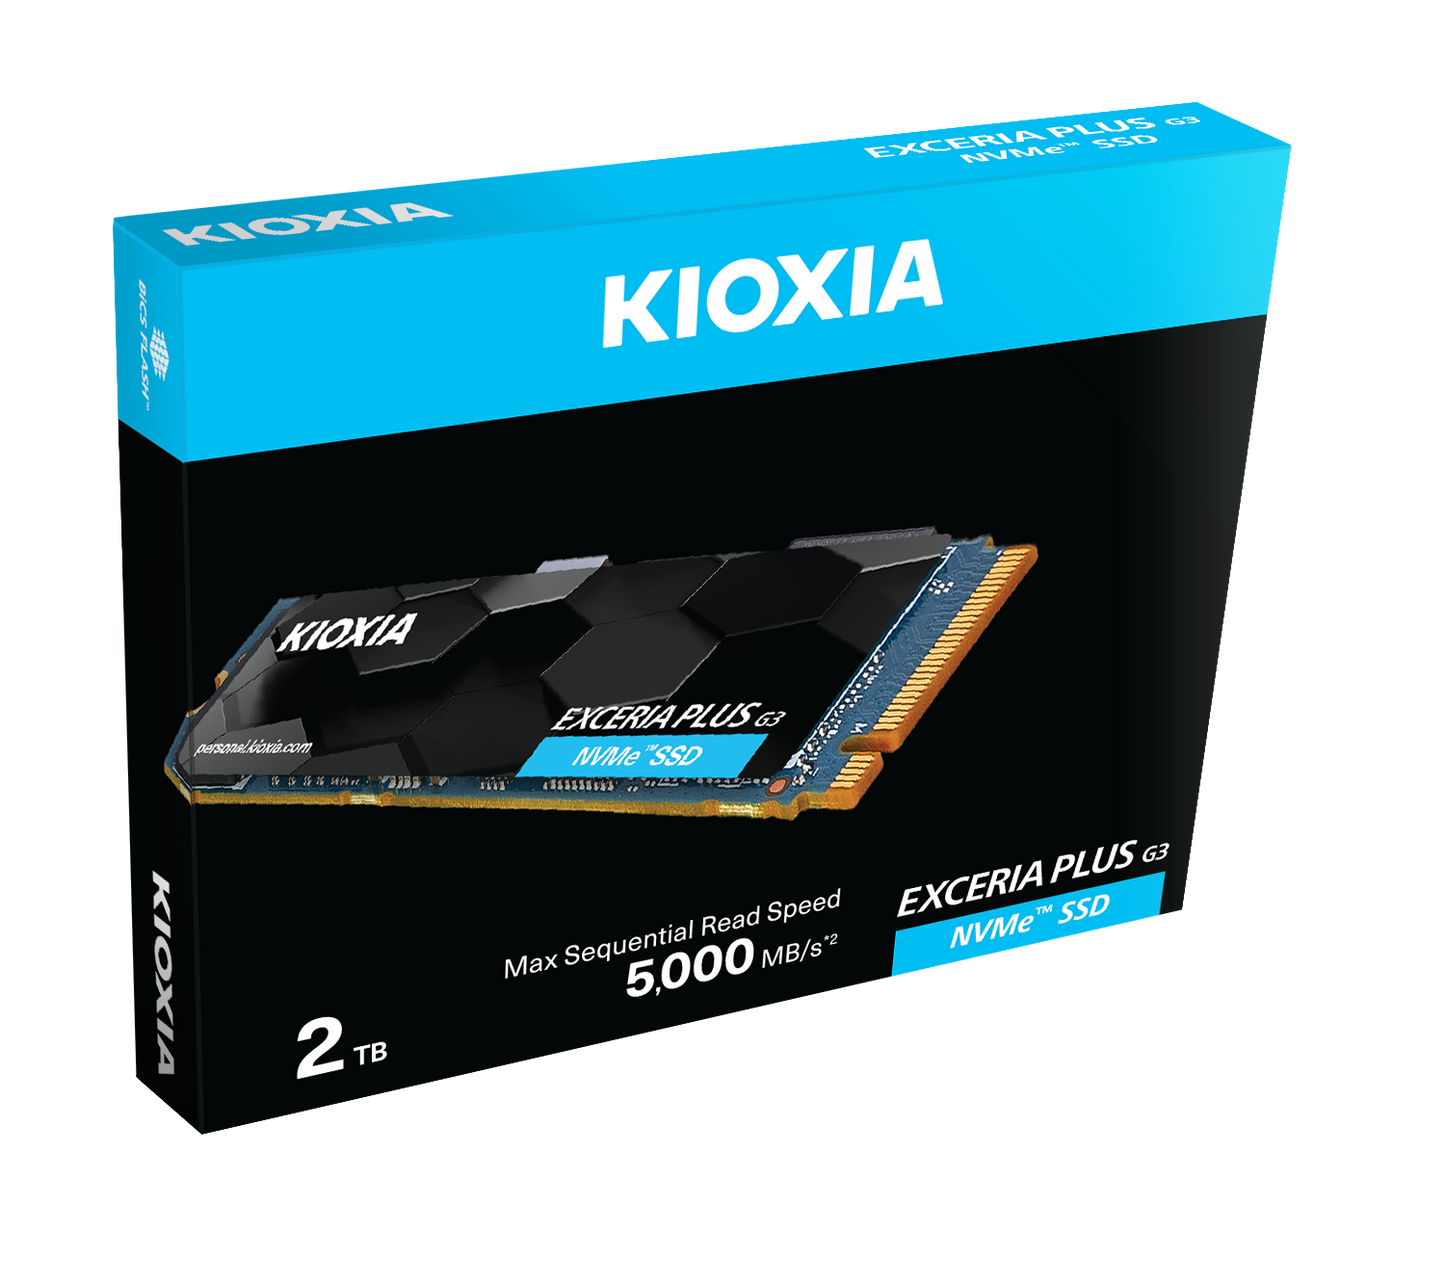 KIOXIA SSD NVMe M.2280 EXCERIA PLUS G1/G3 | TREK 2000 WebStore